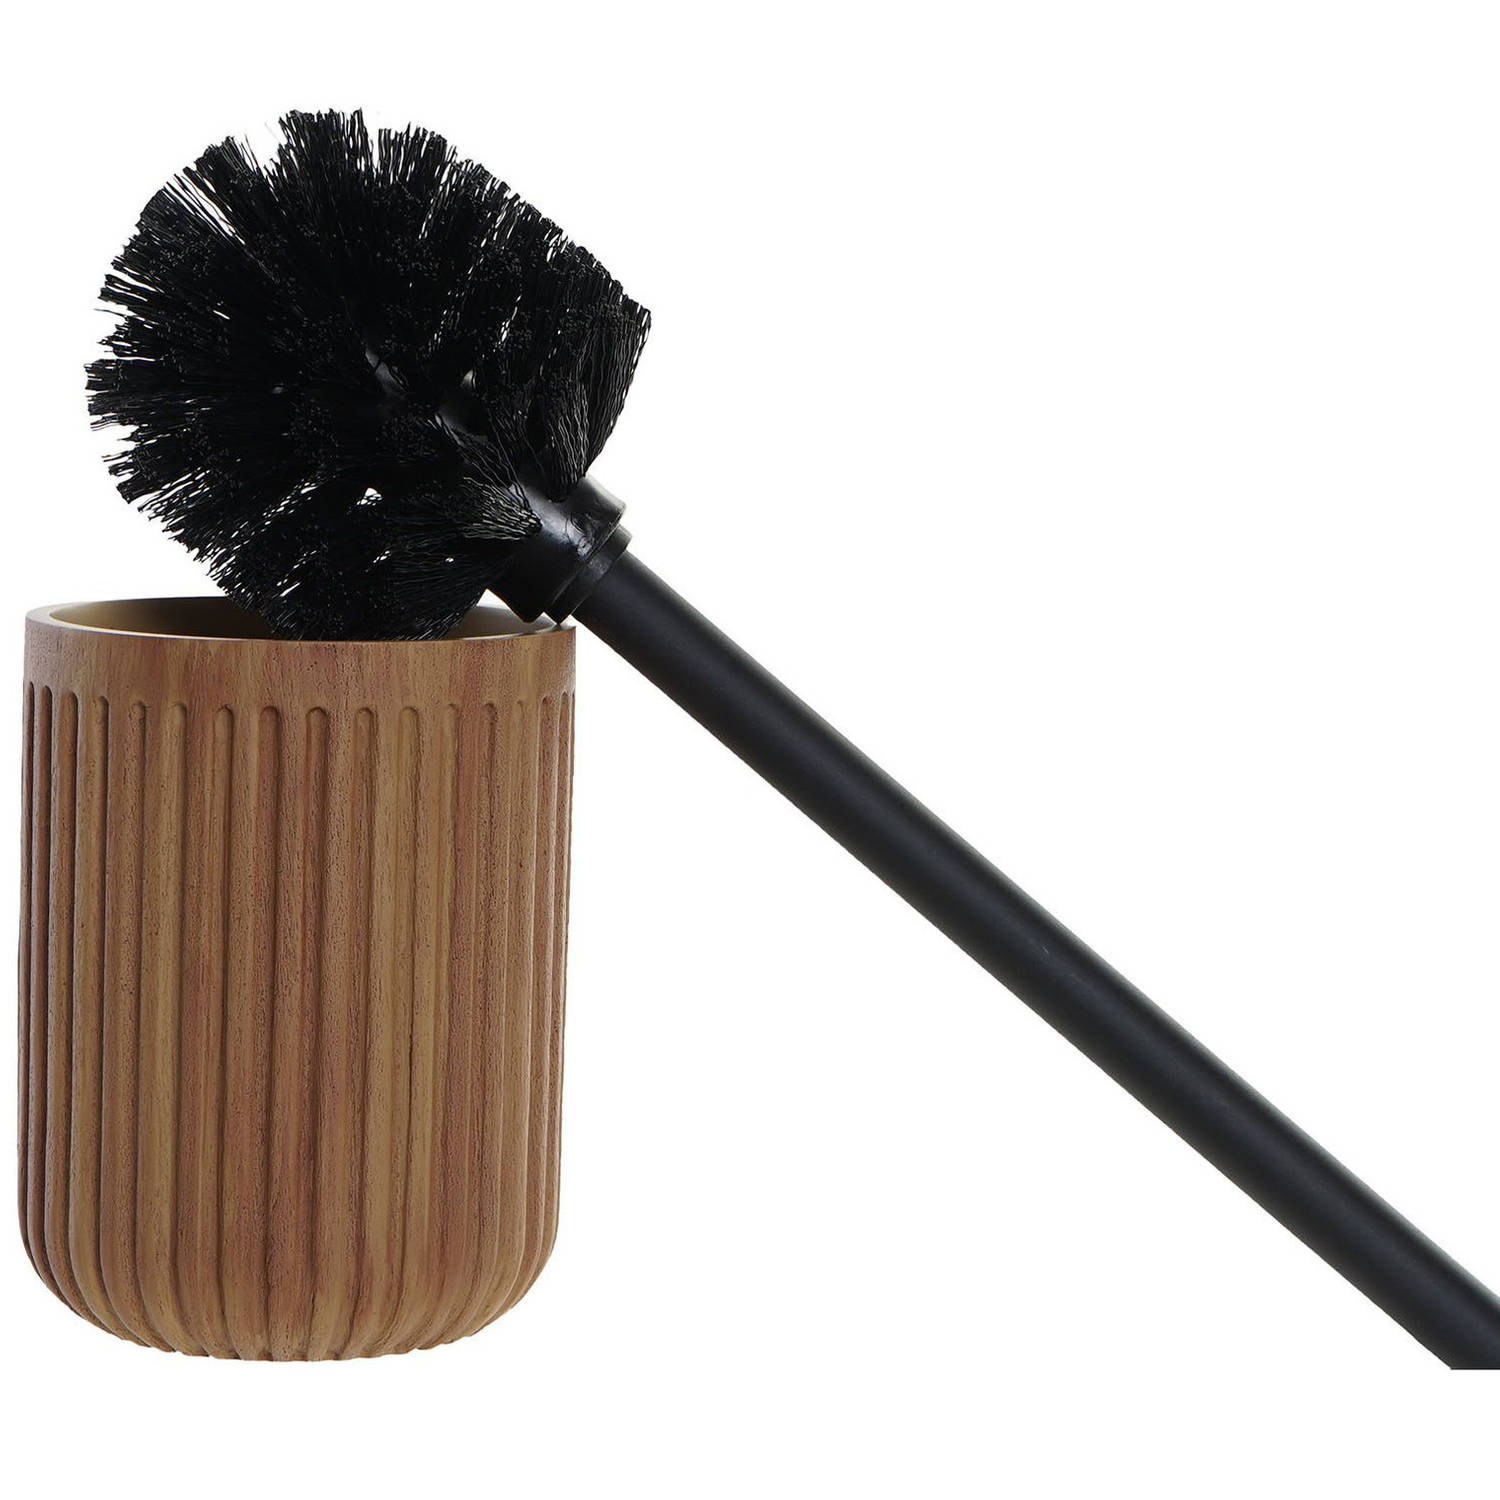 Spectaculair Verval profiel Toiletborstel bruin met hout look houder van polyresin 37 cm -  Toiletborstels | Blokker